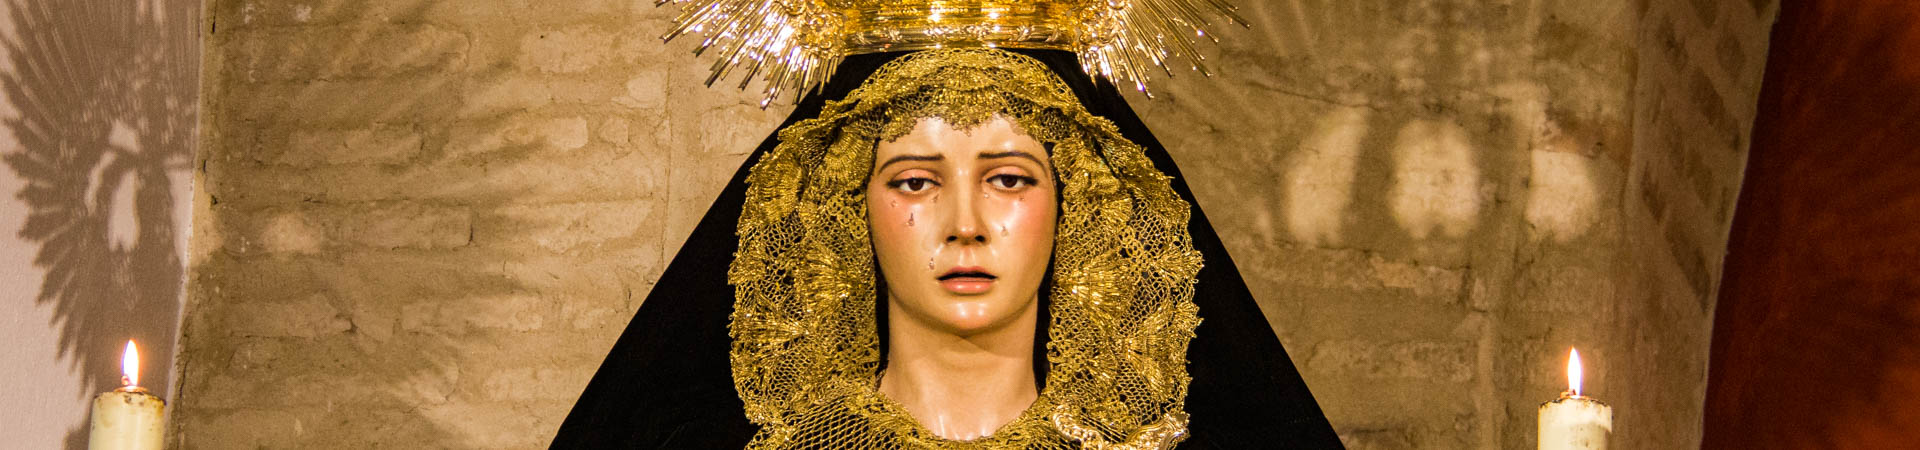 Virgen noviembre 2015 cabecera